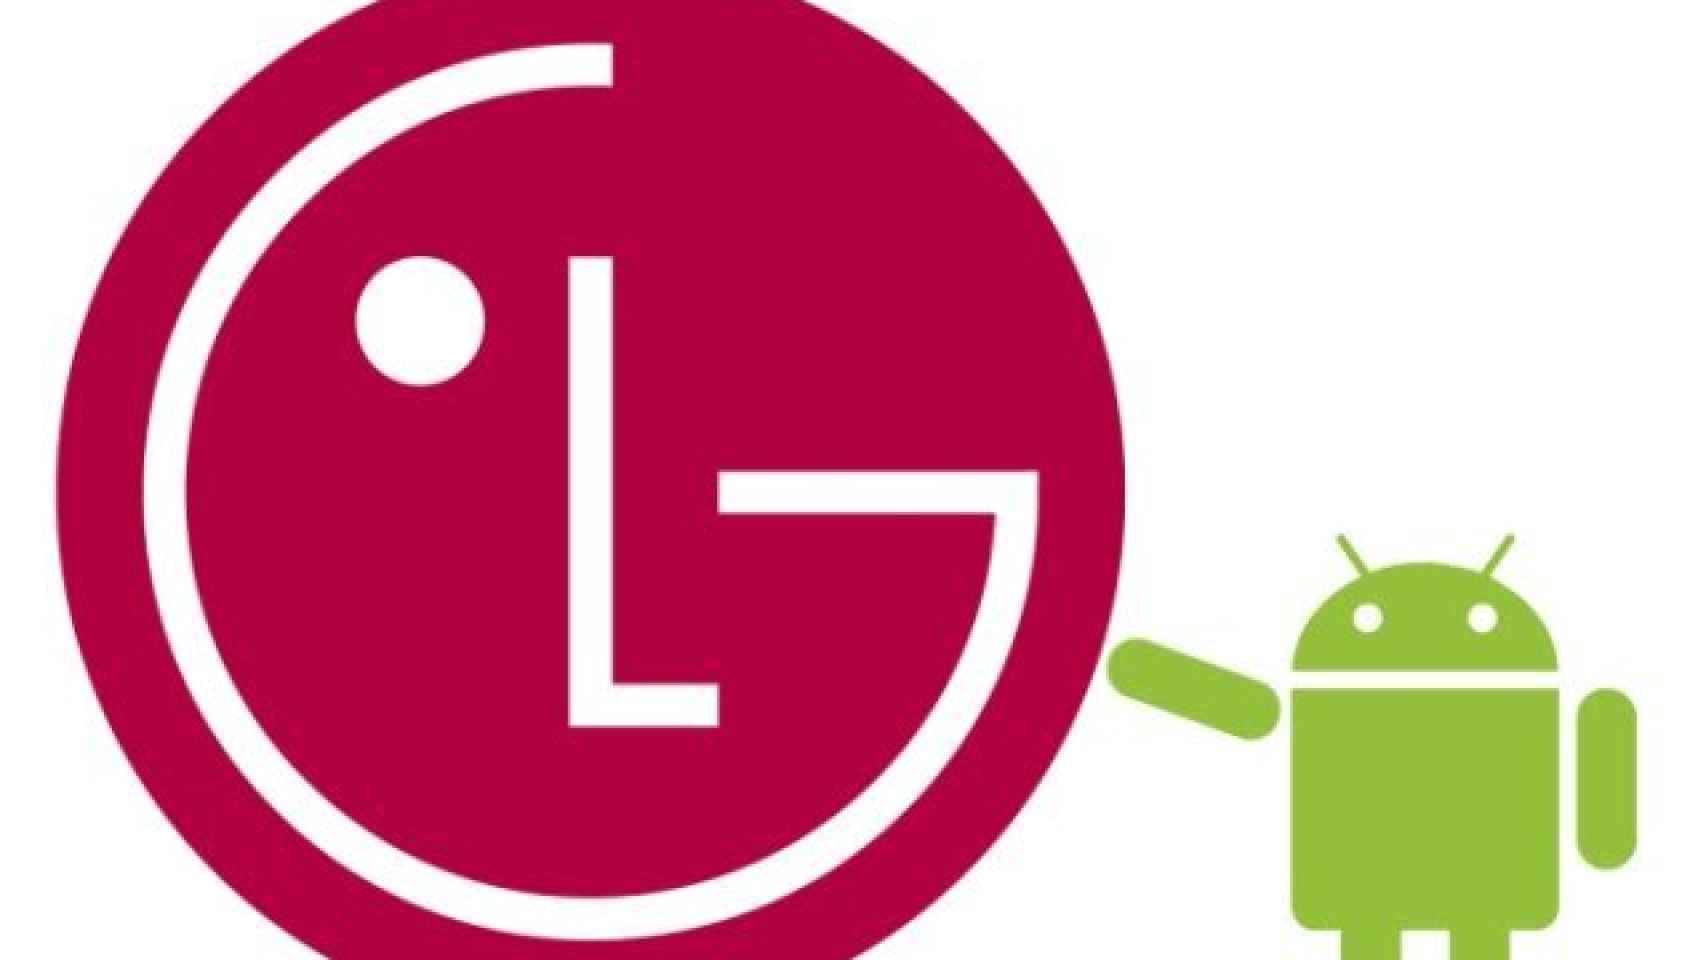 ¿Qué debería hacer LG para recuperar la confianza del usuario?